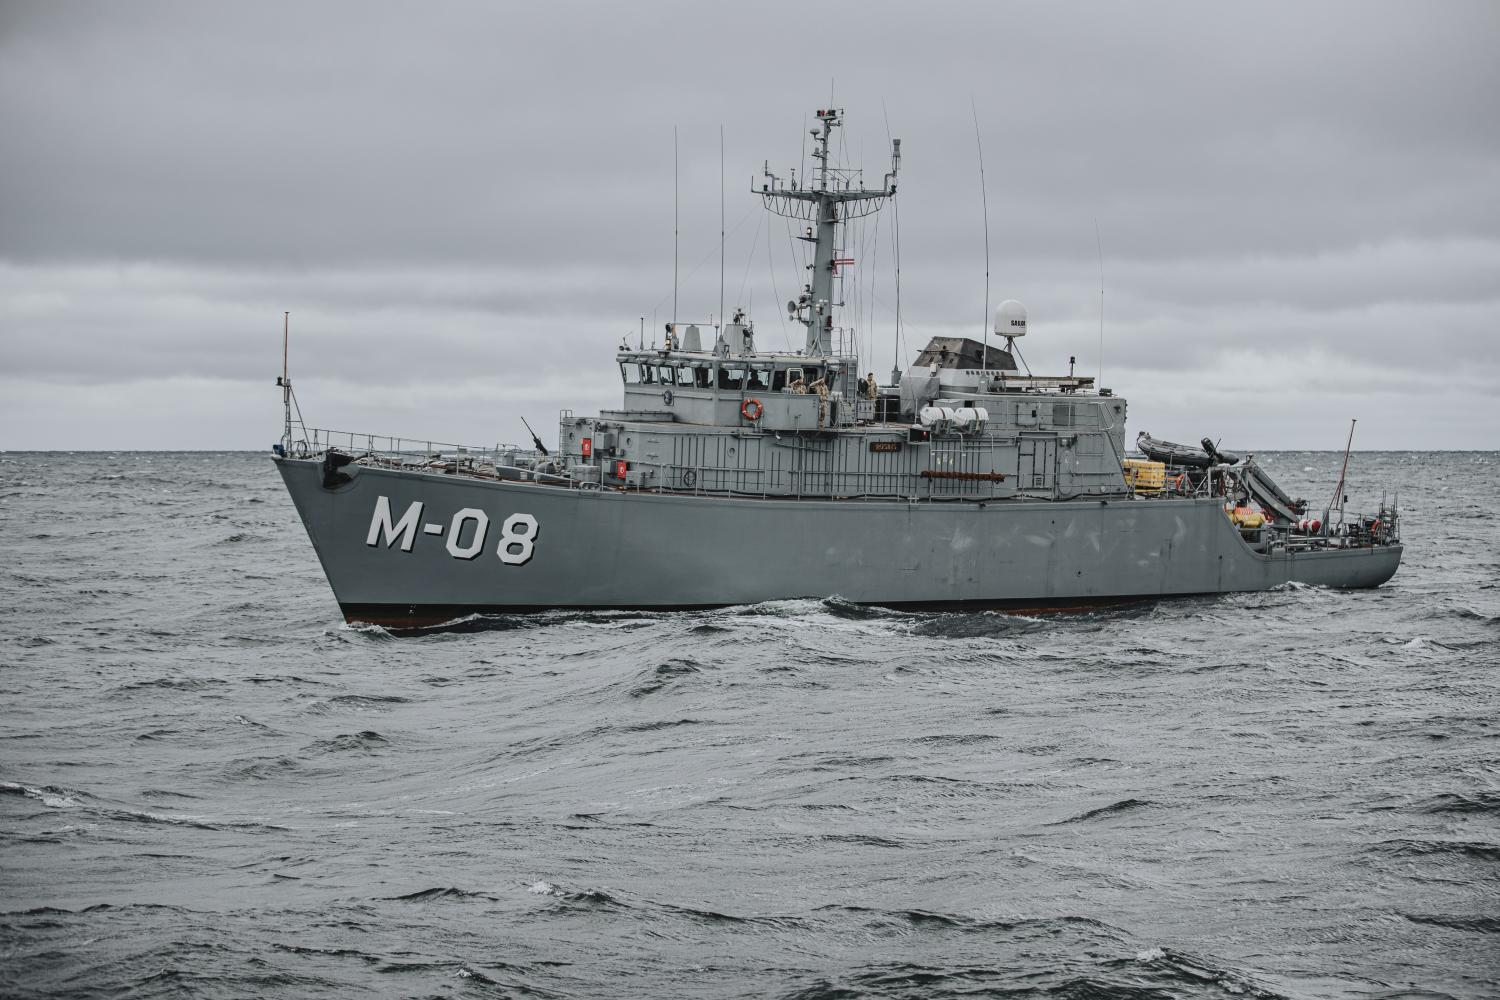 Mīnu kuģis M-08 "Rūsiņš" jūrā